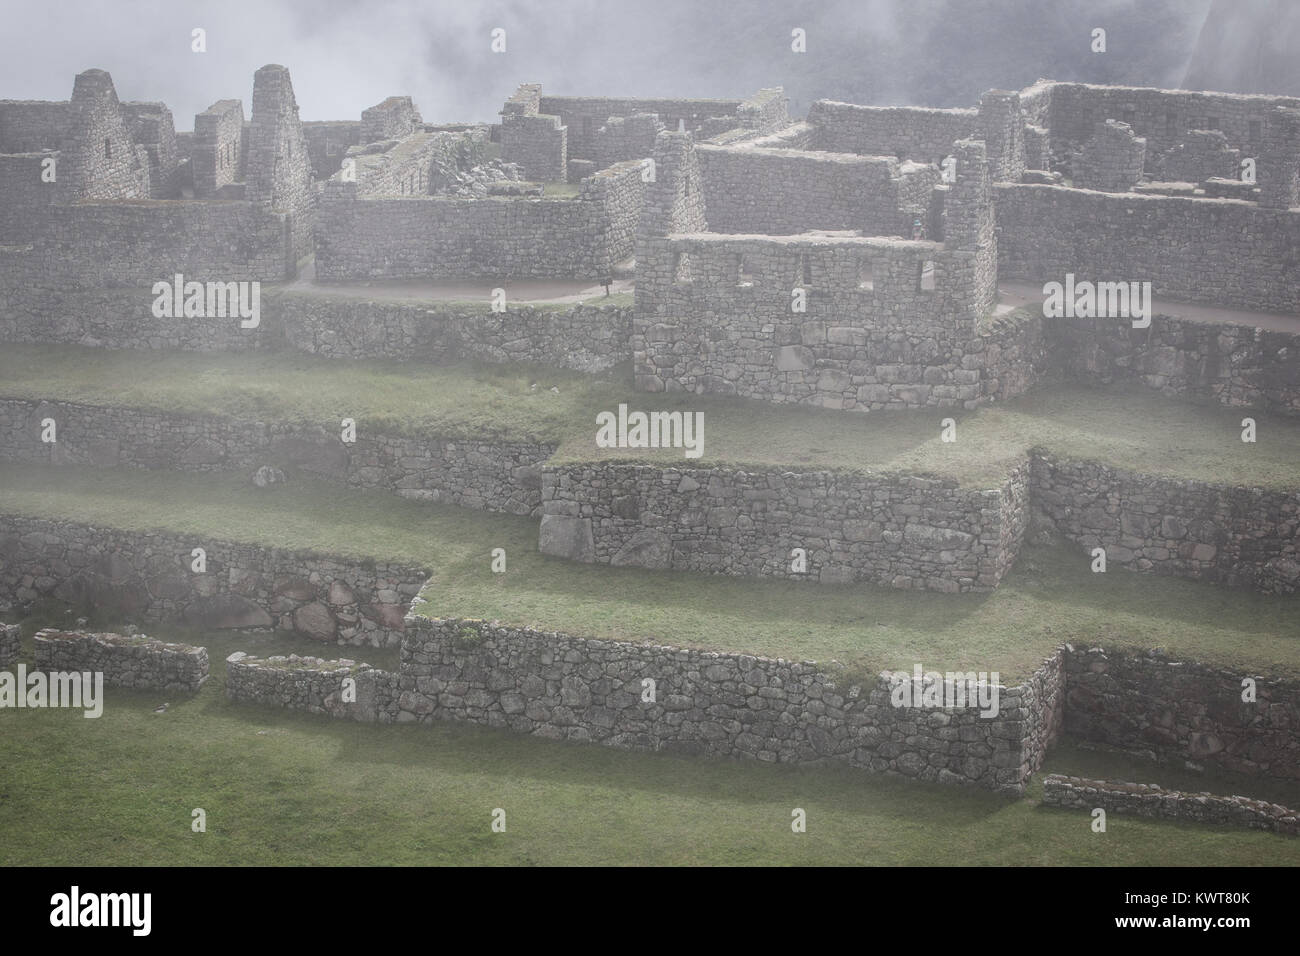 La brume enveloppe la vide pacifique ruines de Machu Picchu, au Pérou. Banque D'Images